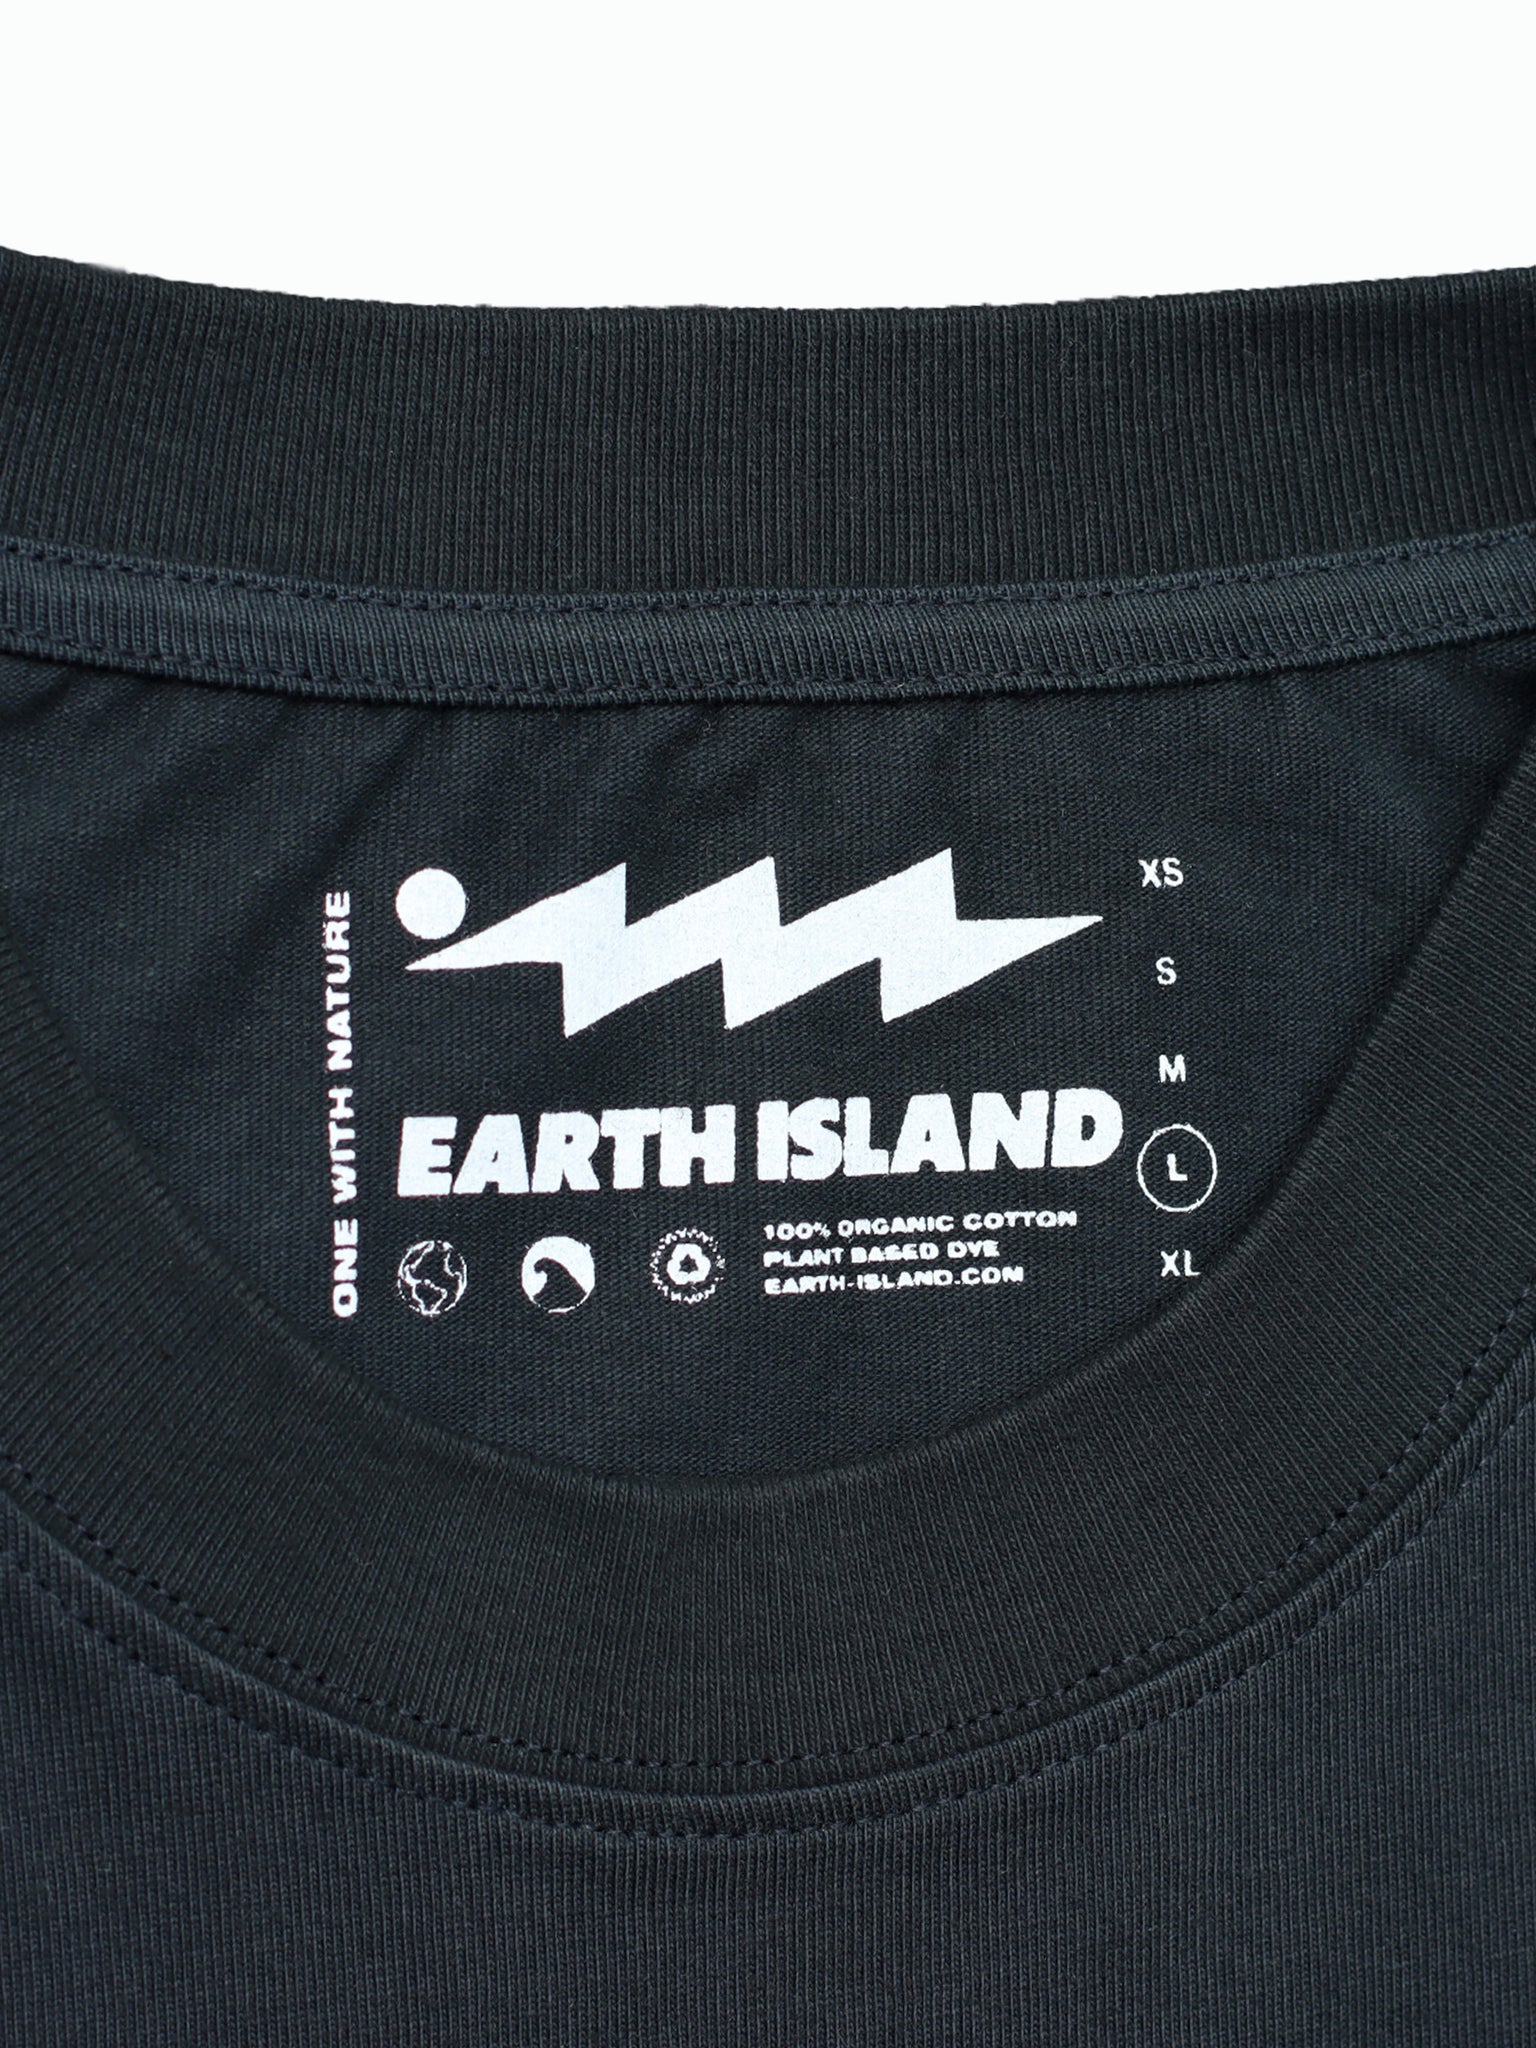 EARTH ISLAND BLACK LOGO - LONG SLEEVE